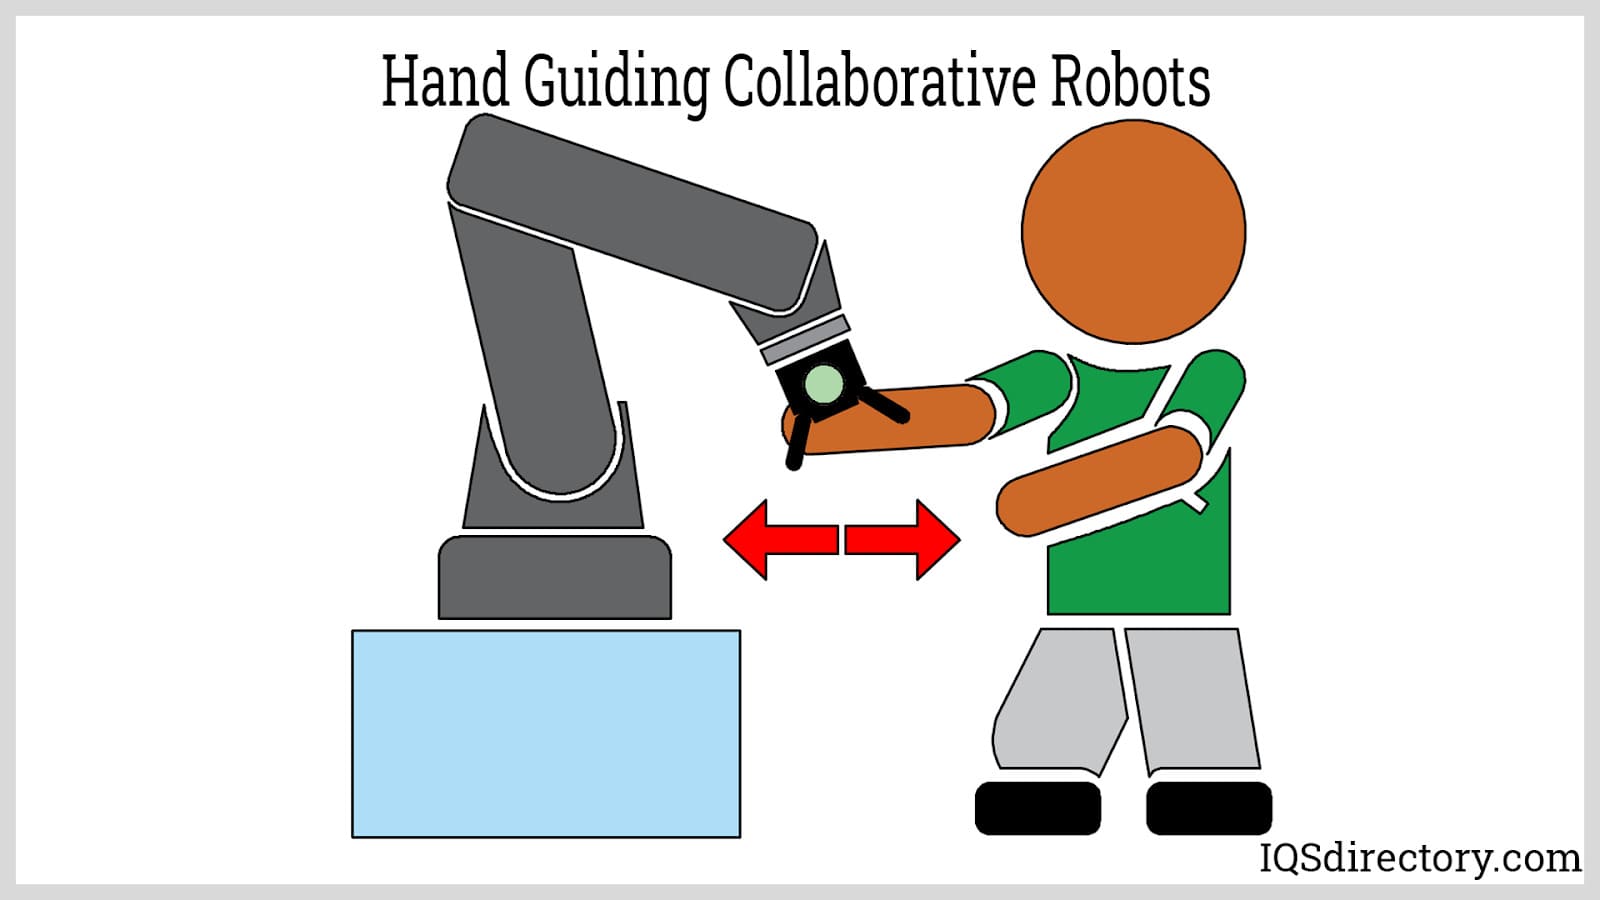 Hand Guiding Collaborative Robots